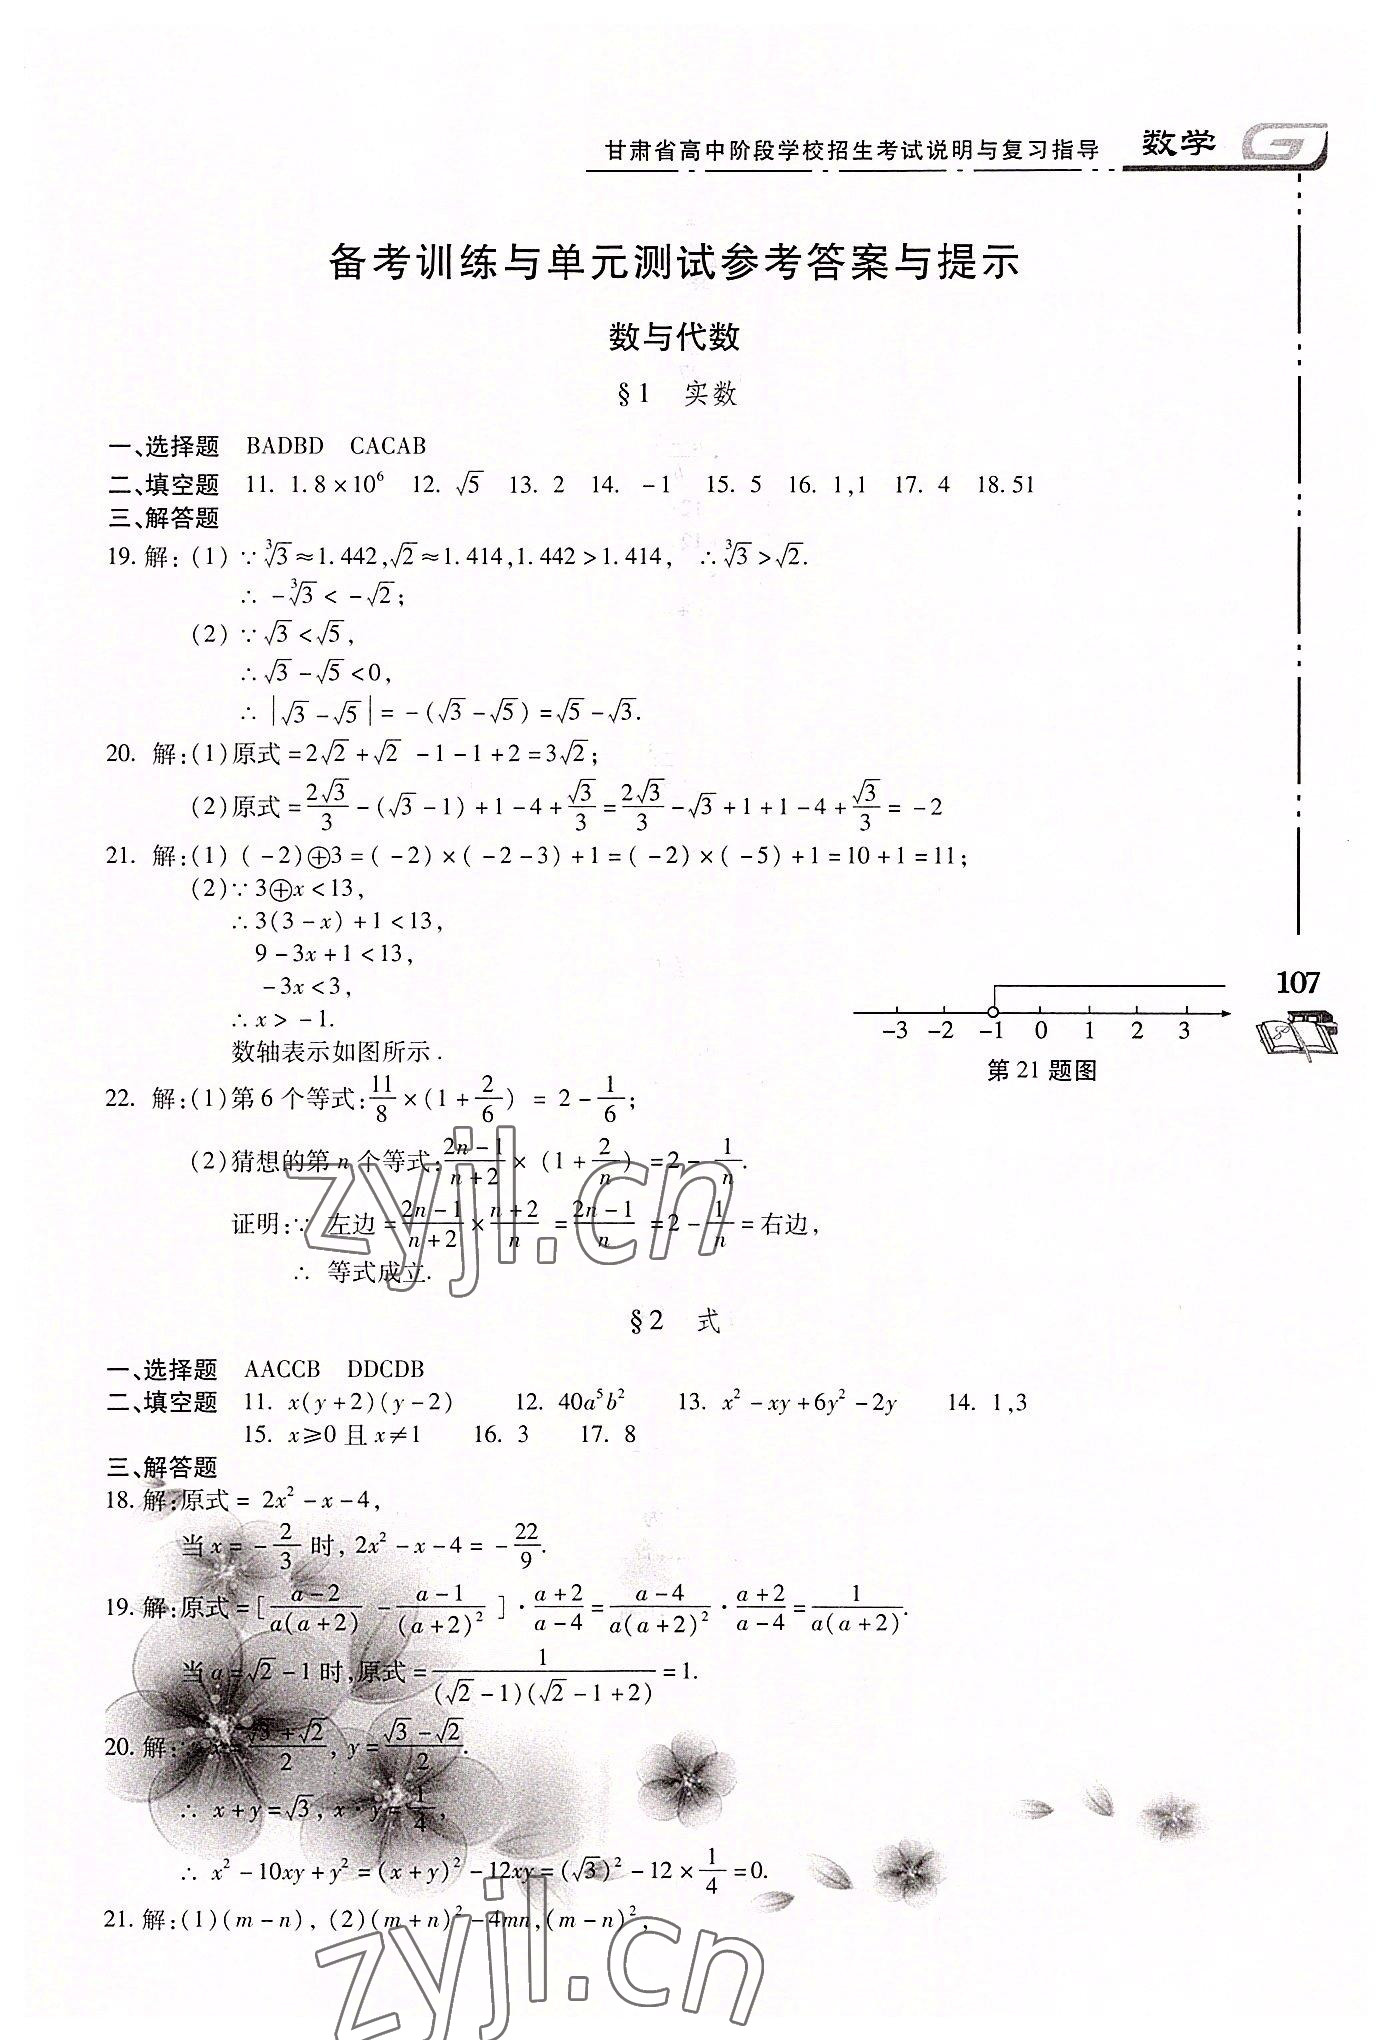 2022年甘肃省高中阶段学校招生考试说明与复习指导数学 第1页